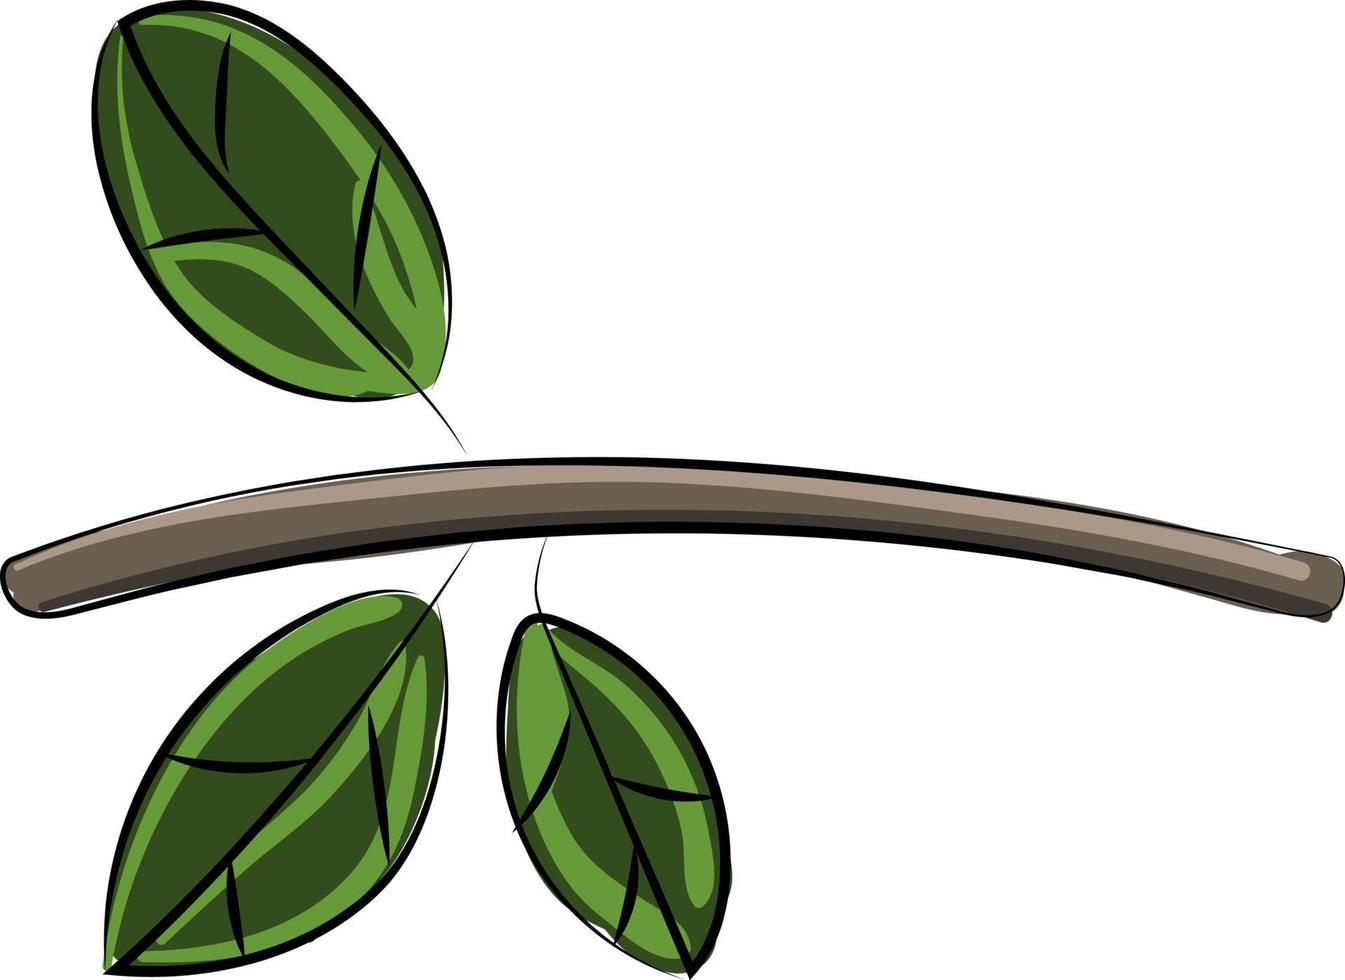 rama verde, ilustración, vector sobre fondo blanco.